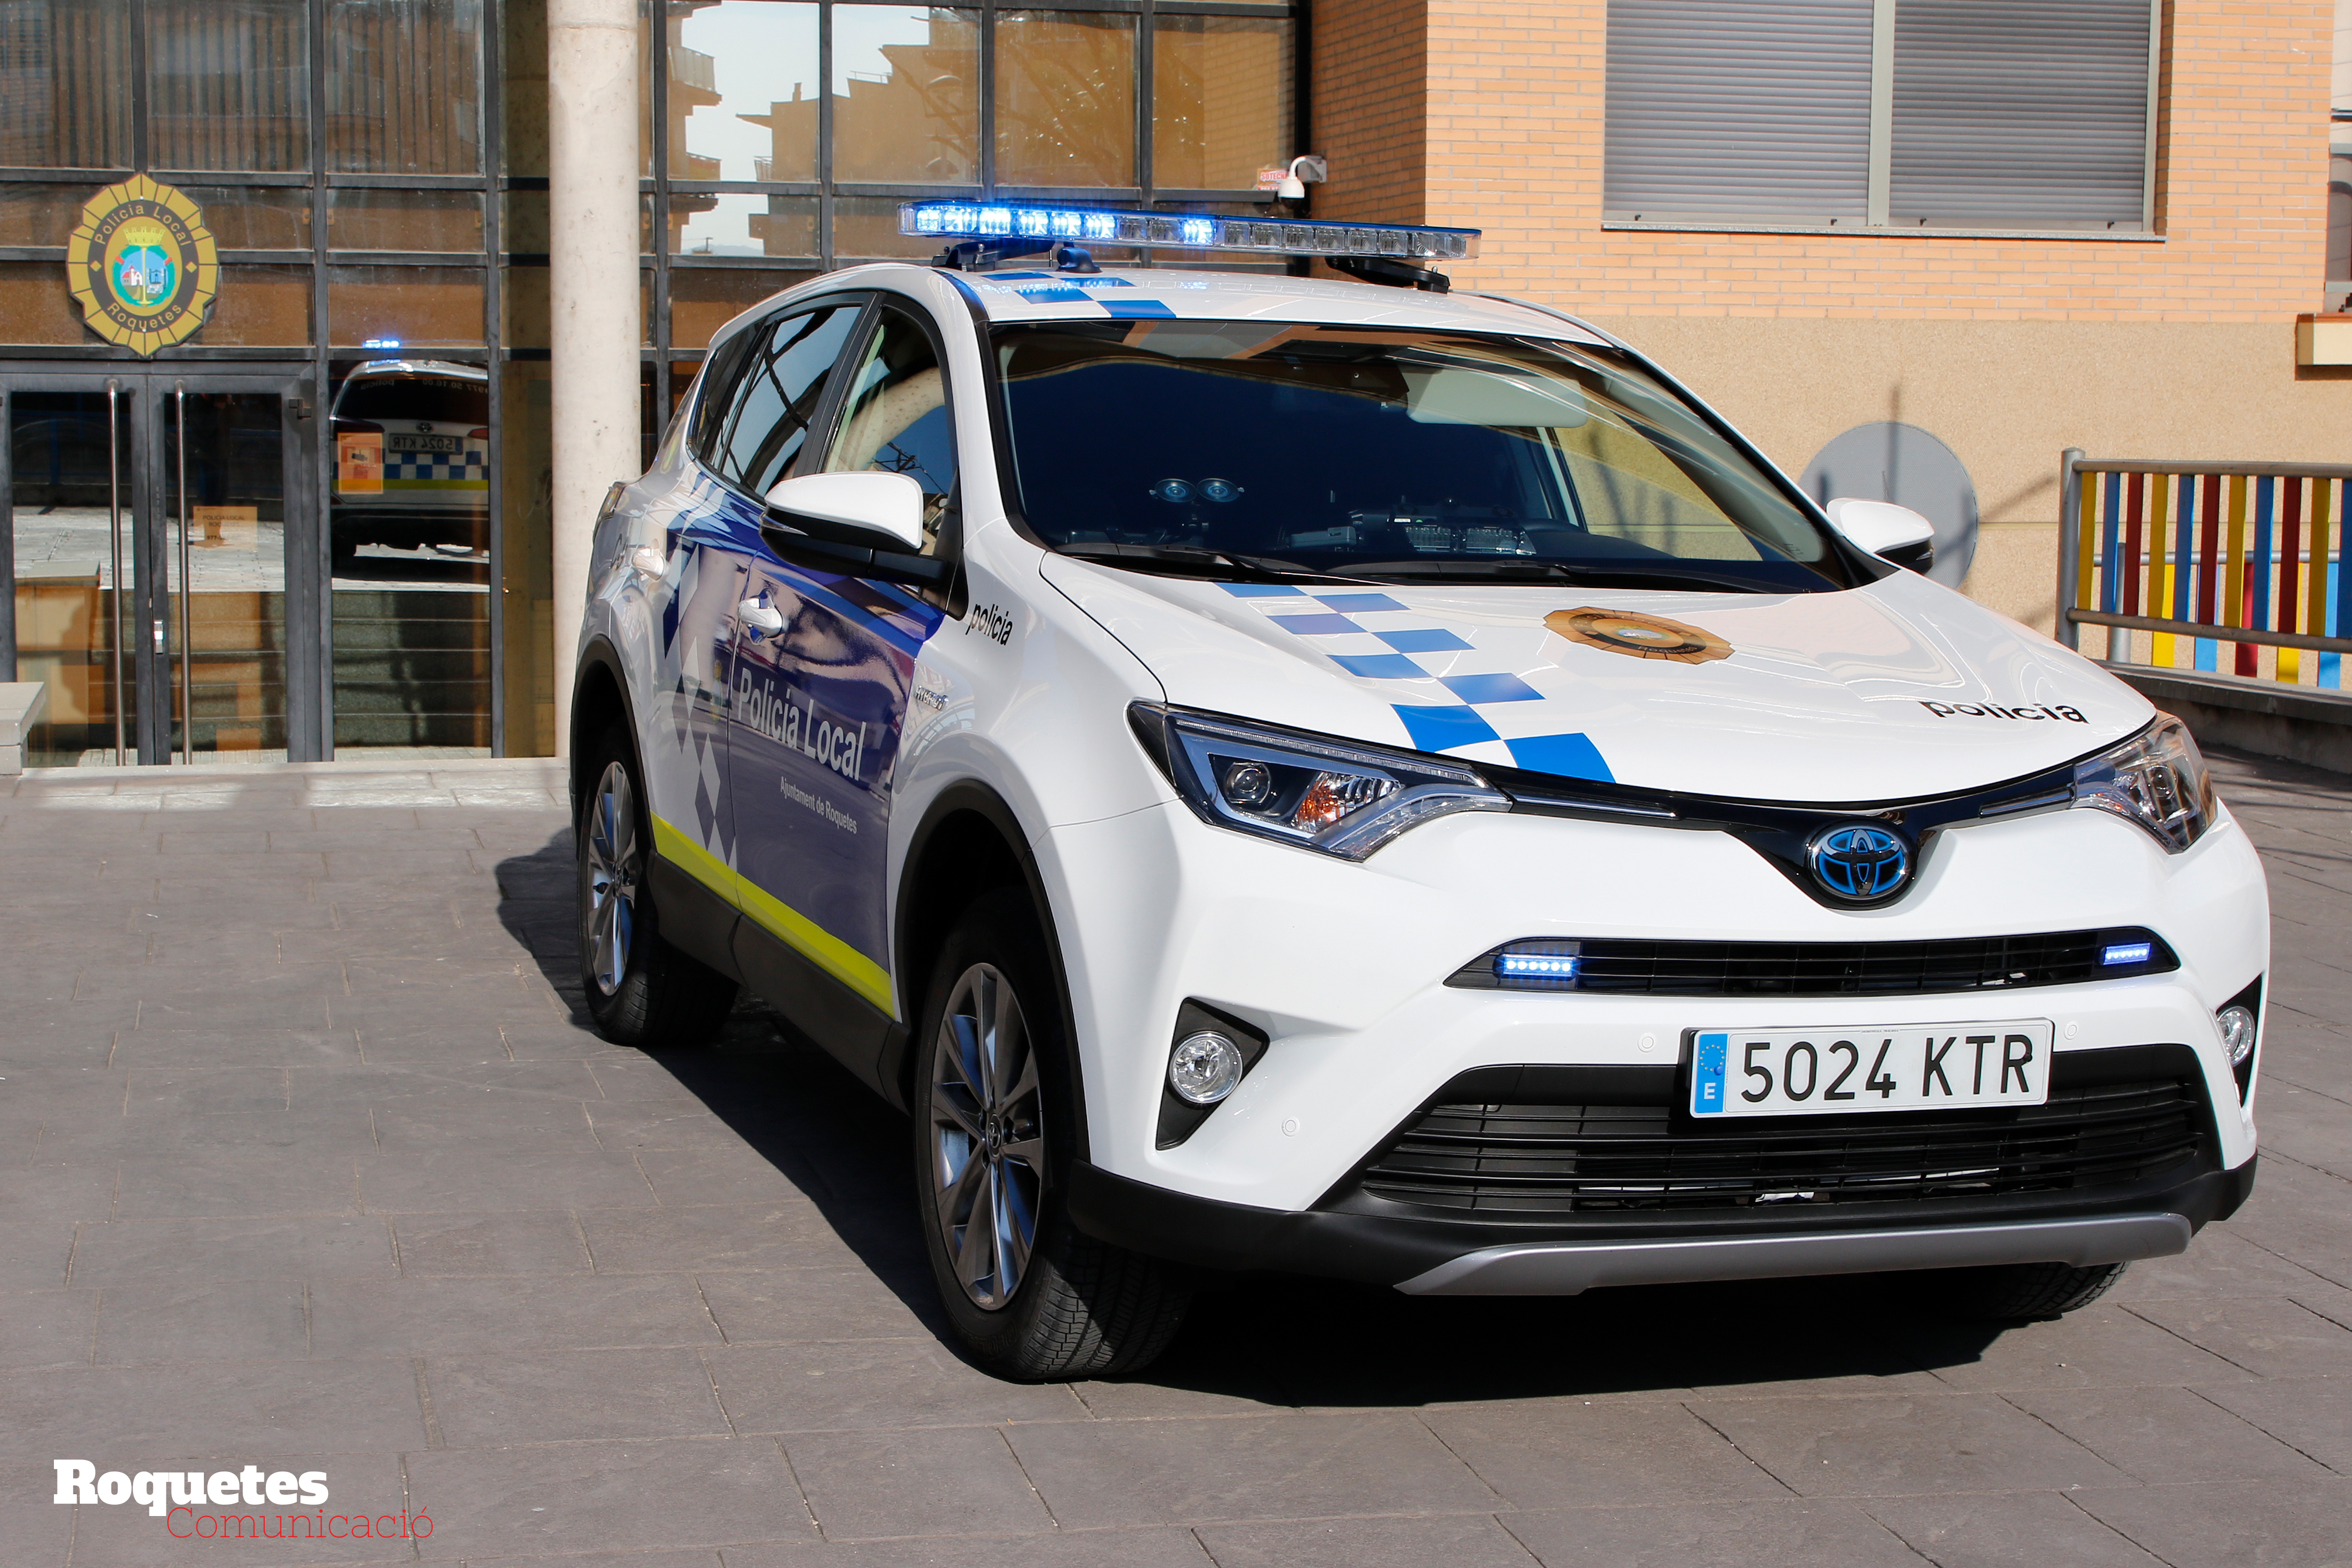 Presentació del nou vehicle híbrid de la Policia Local de Roquetes. 25-02-19